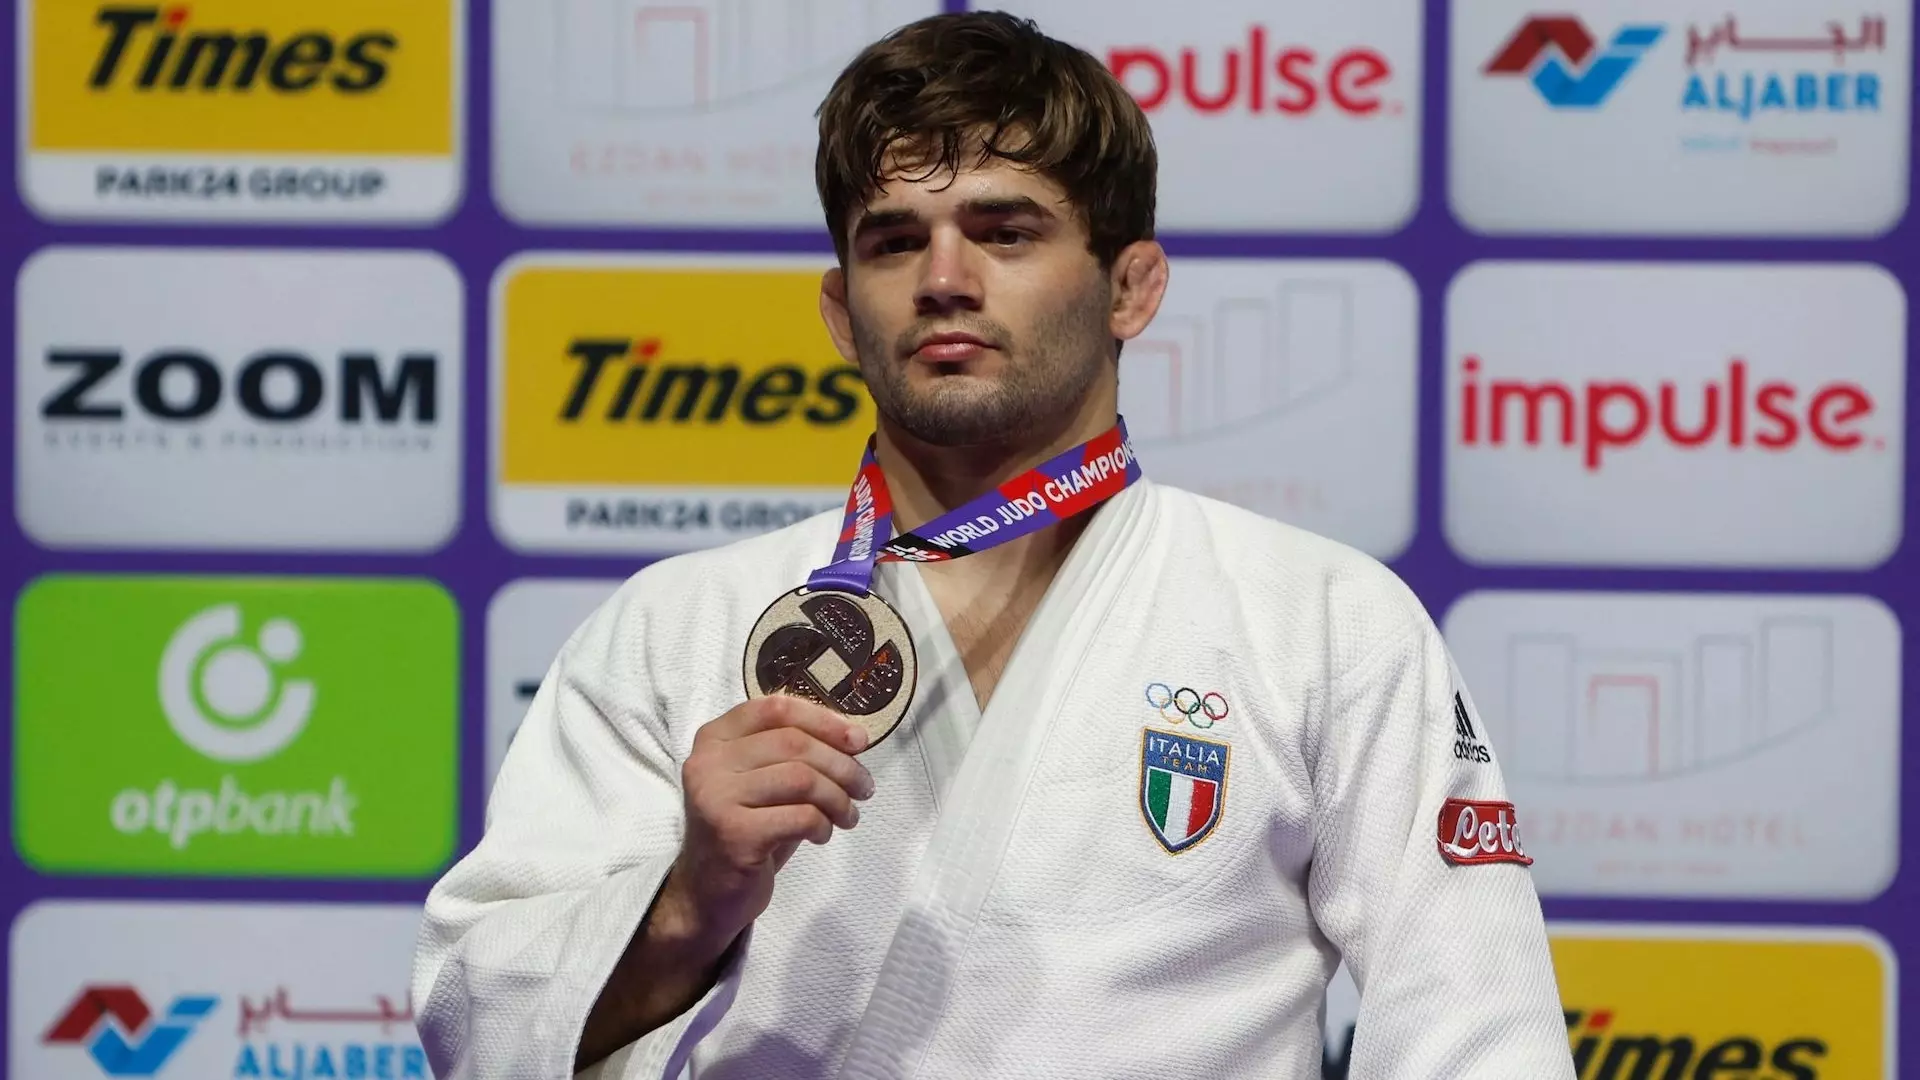 Mondiali di judo: Manuel Lombardo argento nei 73 kg.